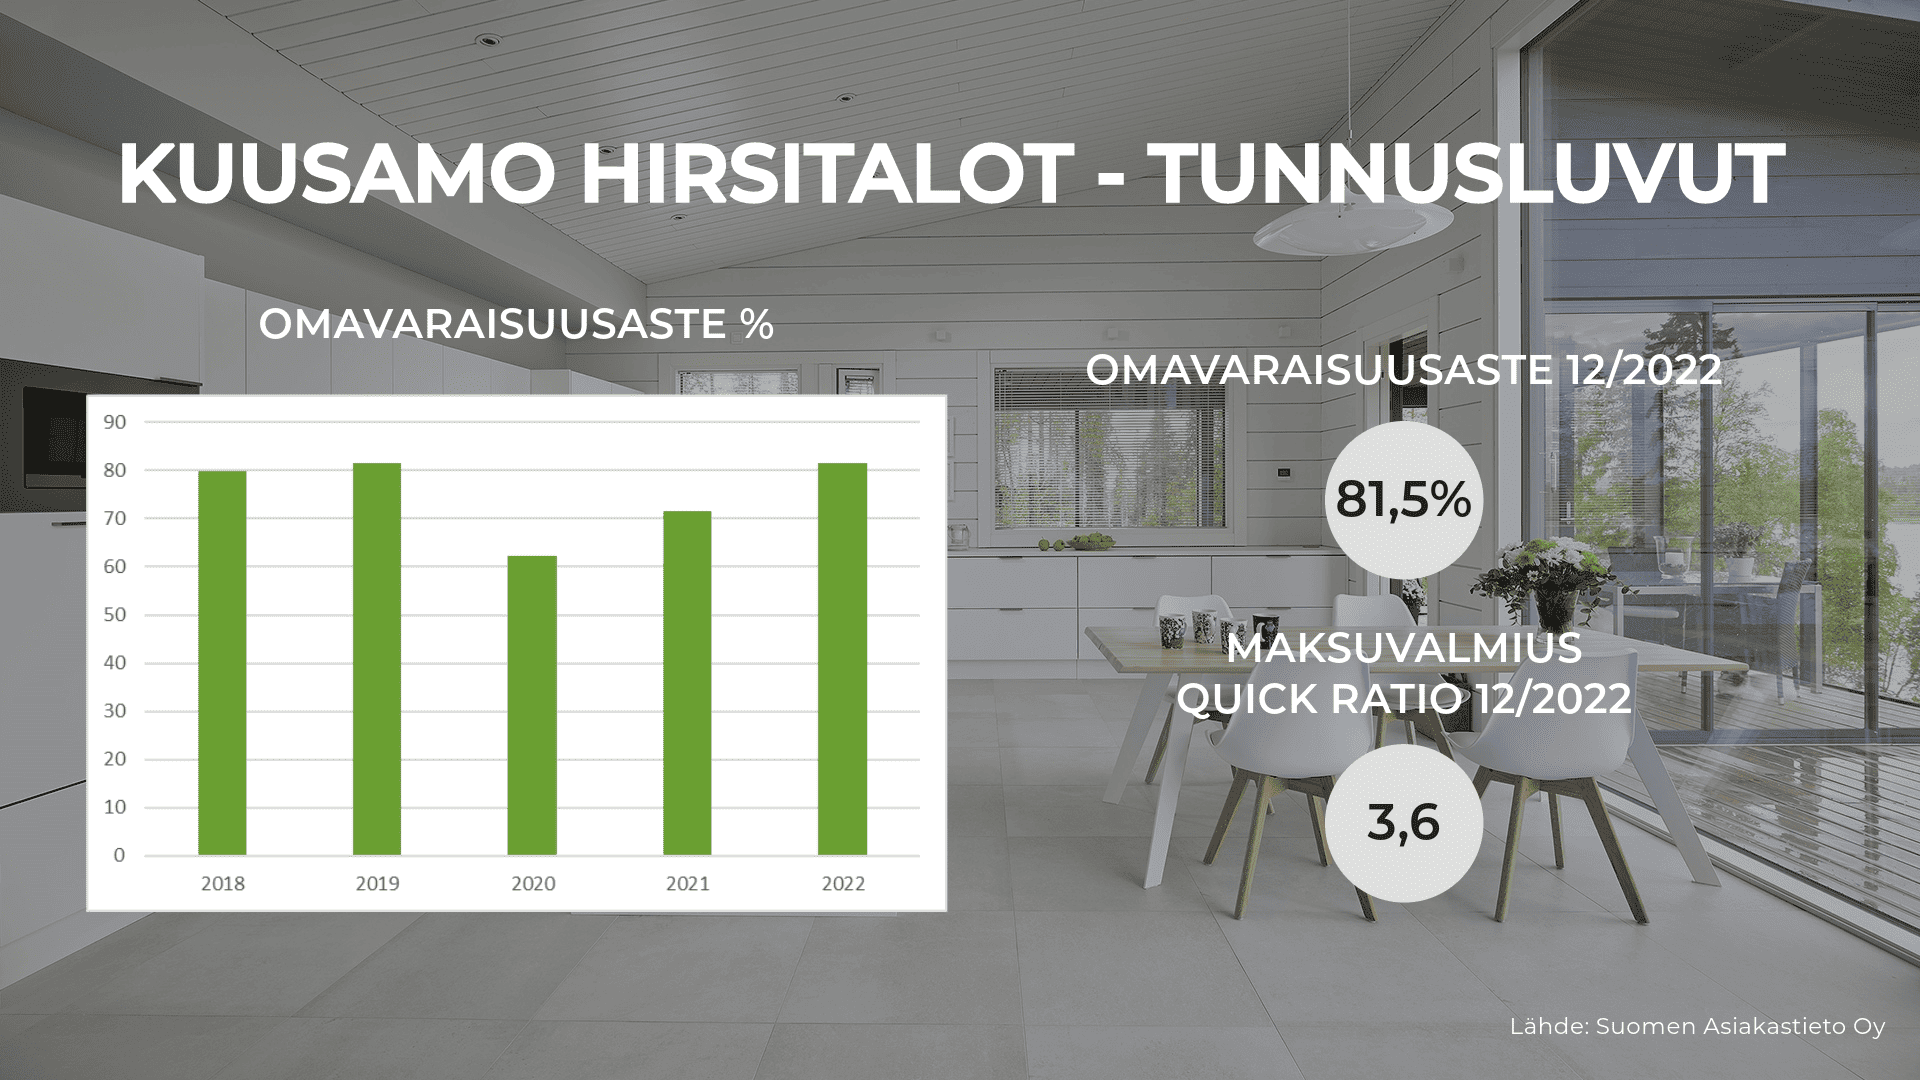 Kuusamo Hirsitalojen taloustilannetta avataan kuvassa omavaraisuusasteen kehityksen sekä quick ration kautta. Omavaraisuusaste 12/2022 tilikaudella on 81,5 % sekä Quick ratio 3,6. 